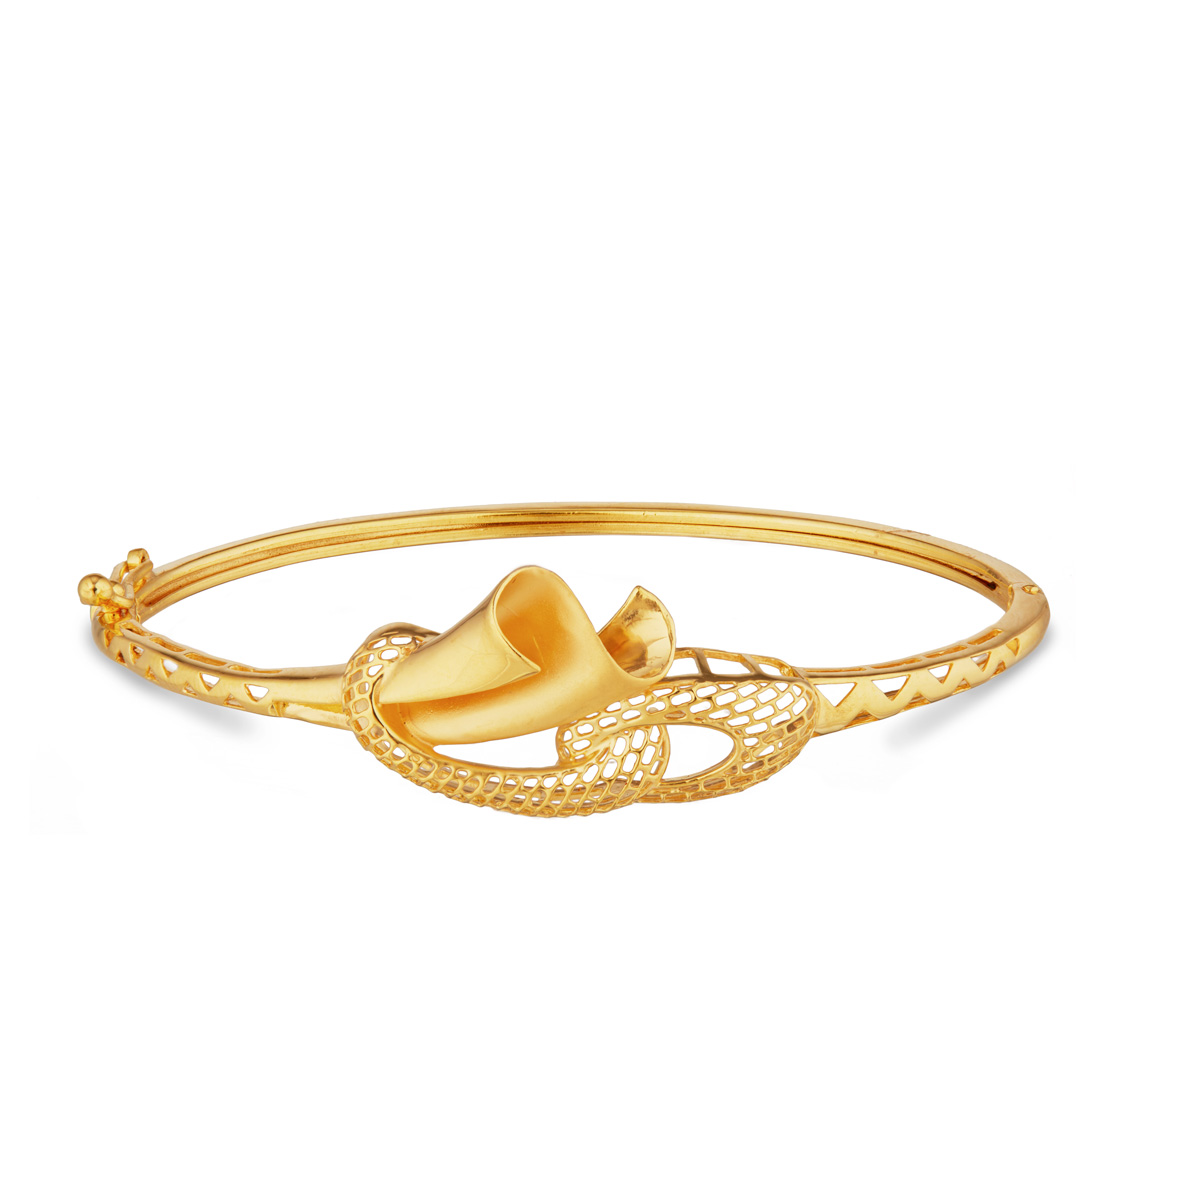 The Divija Gold Bracelet